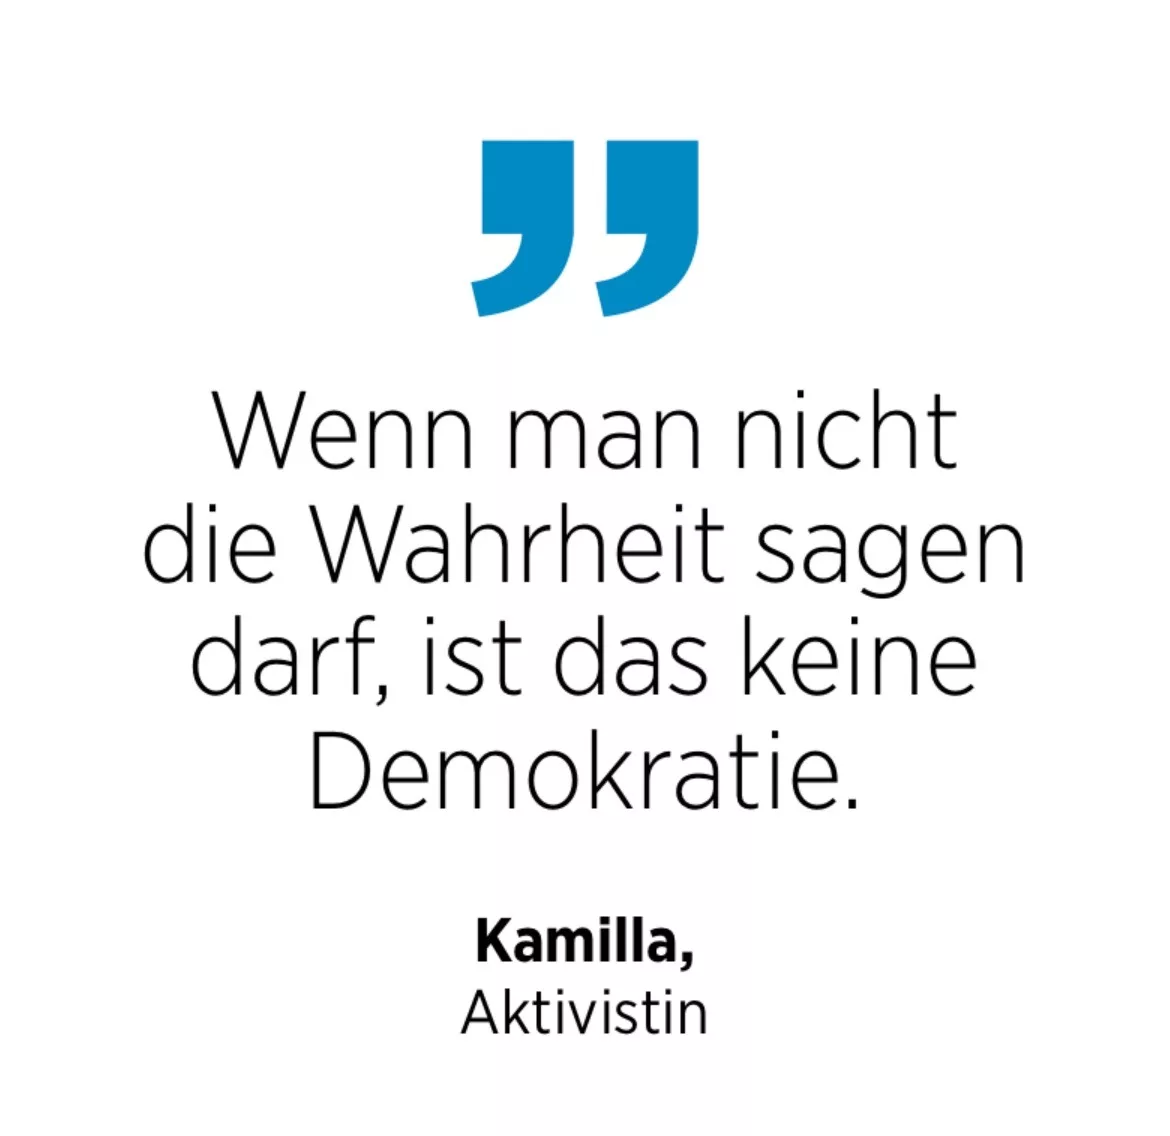 Kamilla, Aktivistin: Wenn man nicht die Wahrheit sagen darf, ist das keine Demokratie.